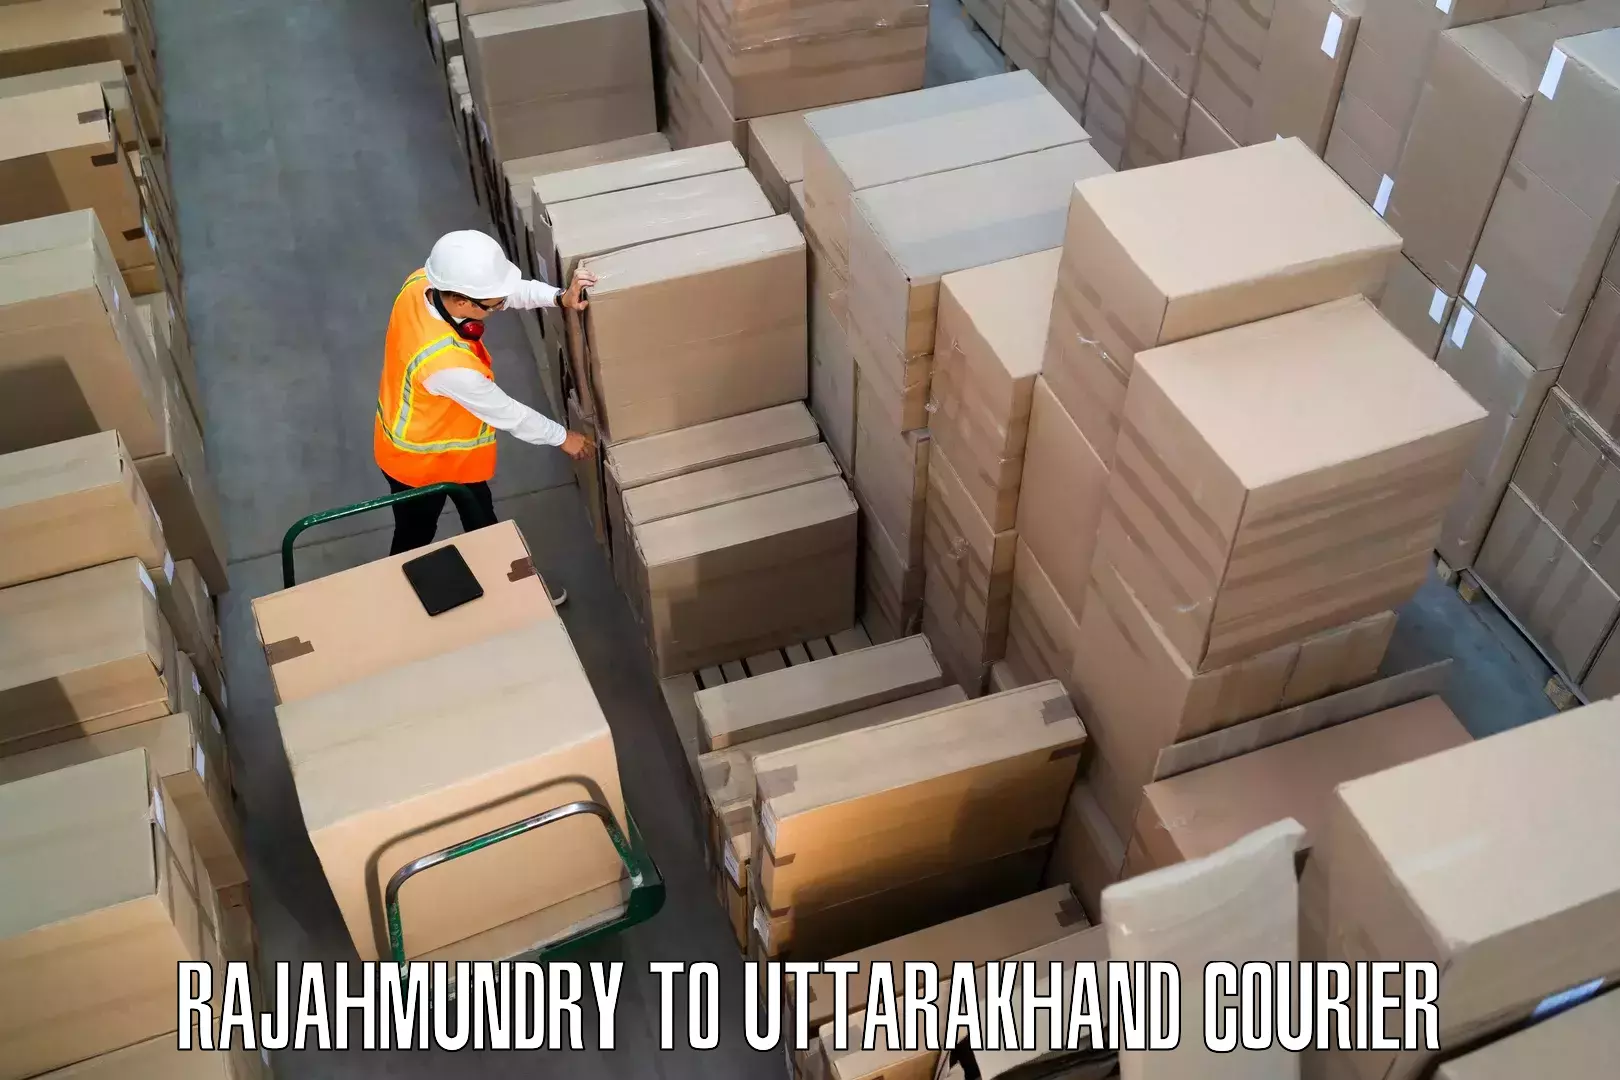 Furniture delivery service Rajahmundry to Tehri